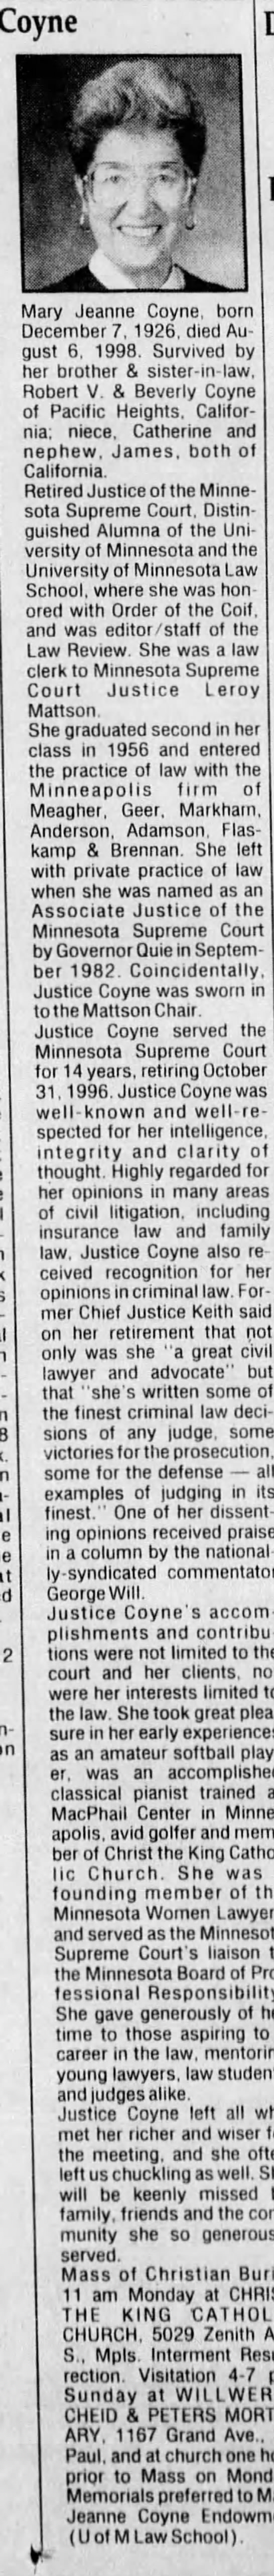 Obituary for Coyne Si V Coyne, 1926-1998 - 